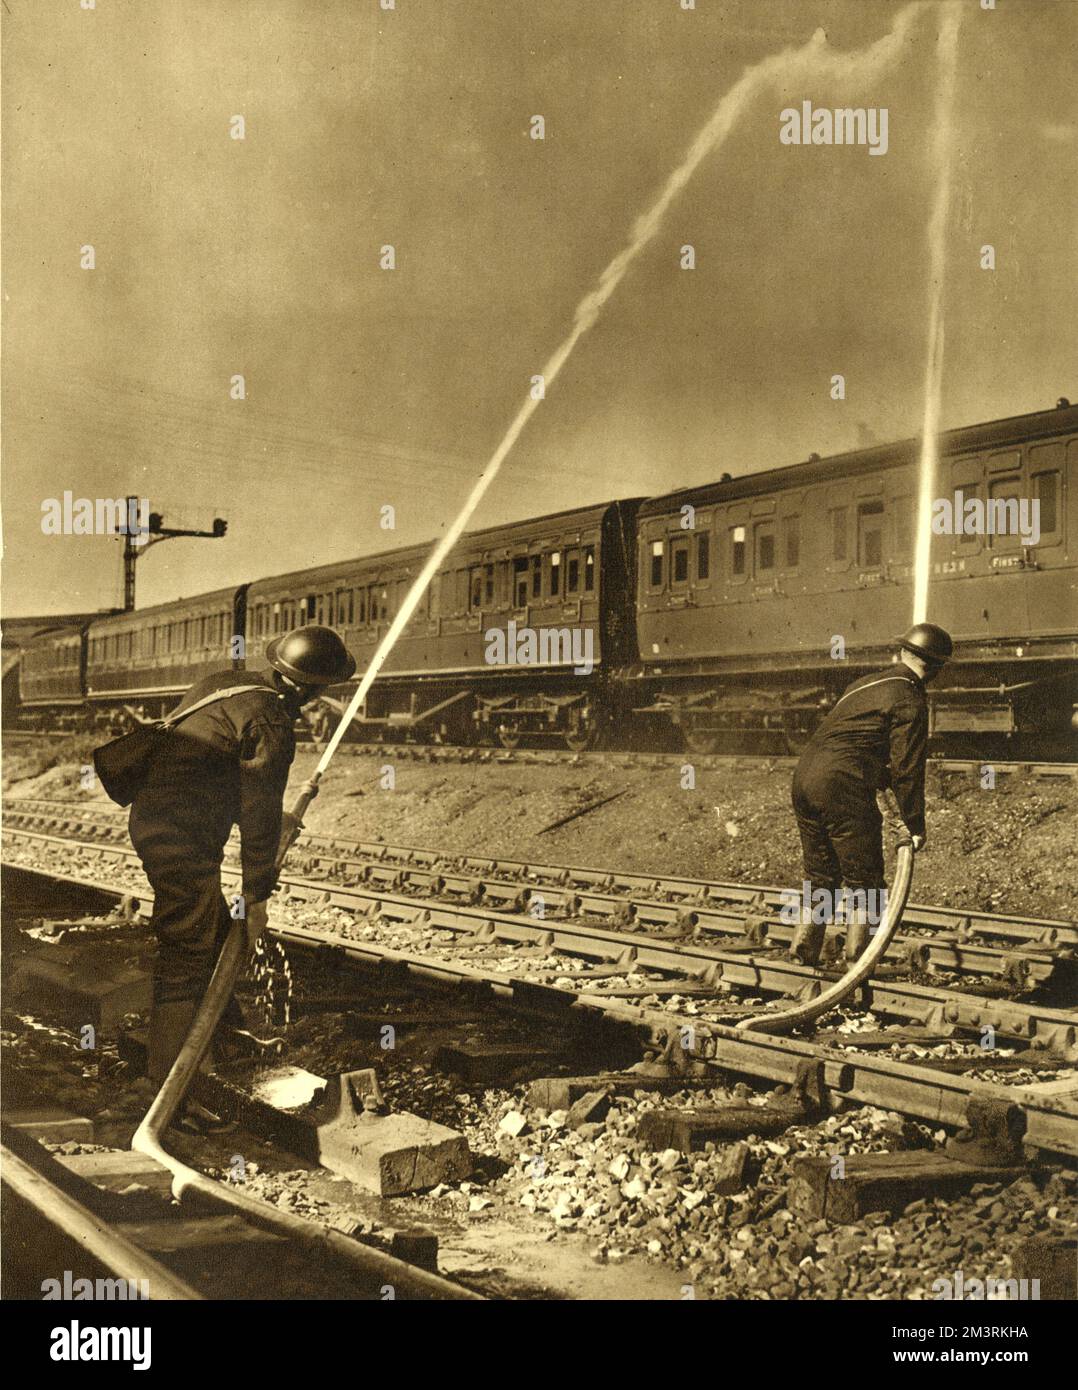 Feuerwehrleute, die für die Southern Railway arbeiten, sprühen Wasser auf das Dach eines Zuges. Southern Railway beschäftigte achtzig A.F.S. Männer, um Brände zu bekämpfen, die durch Brandbomben der Luftwaffe verursacht wurden. 1940 Stockfoto